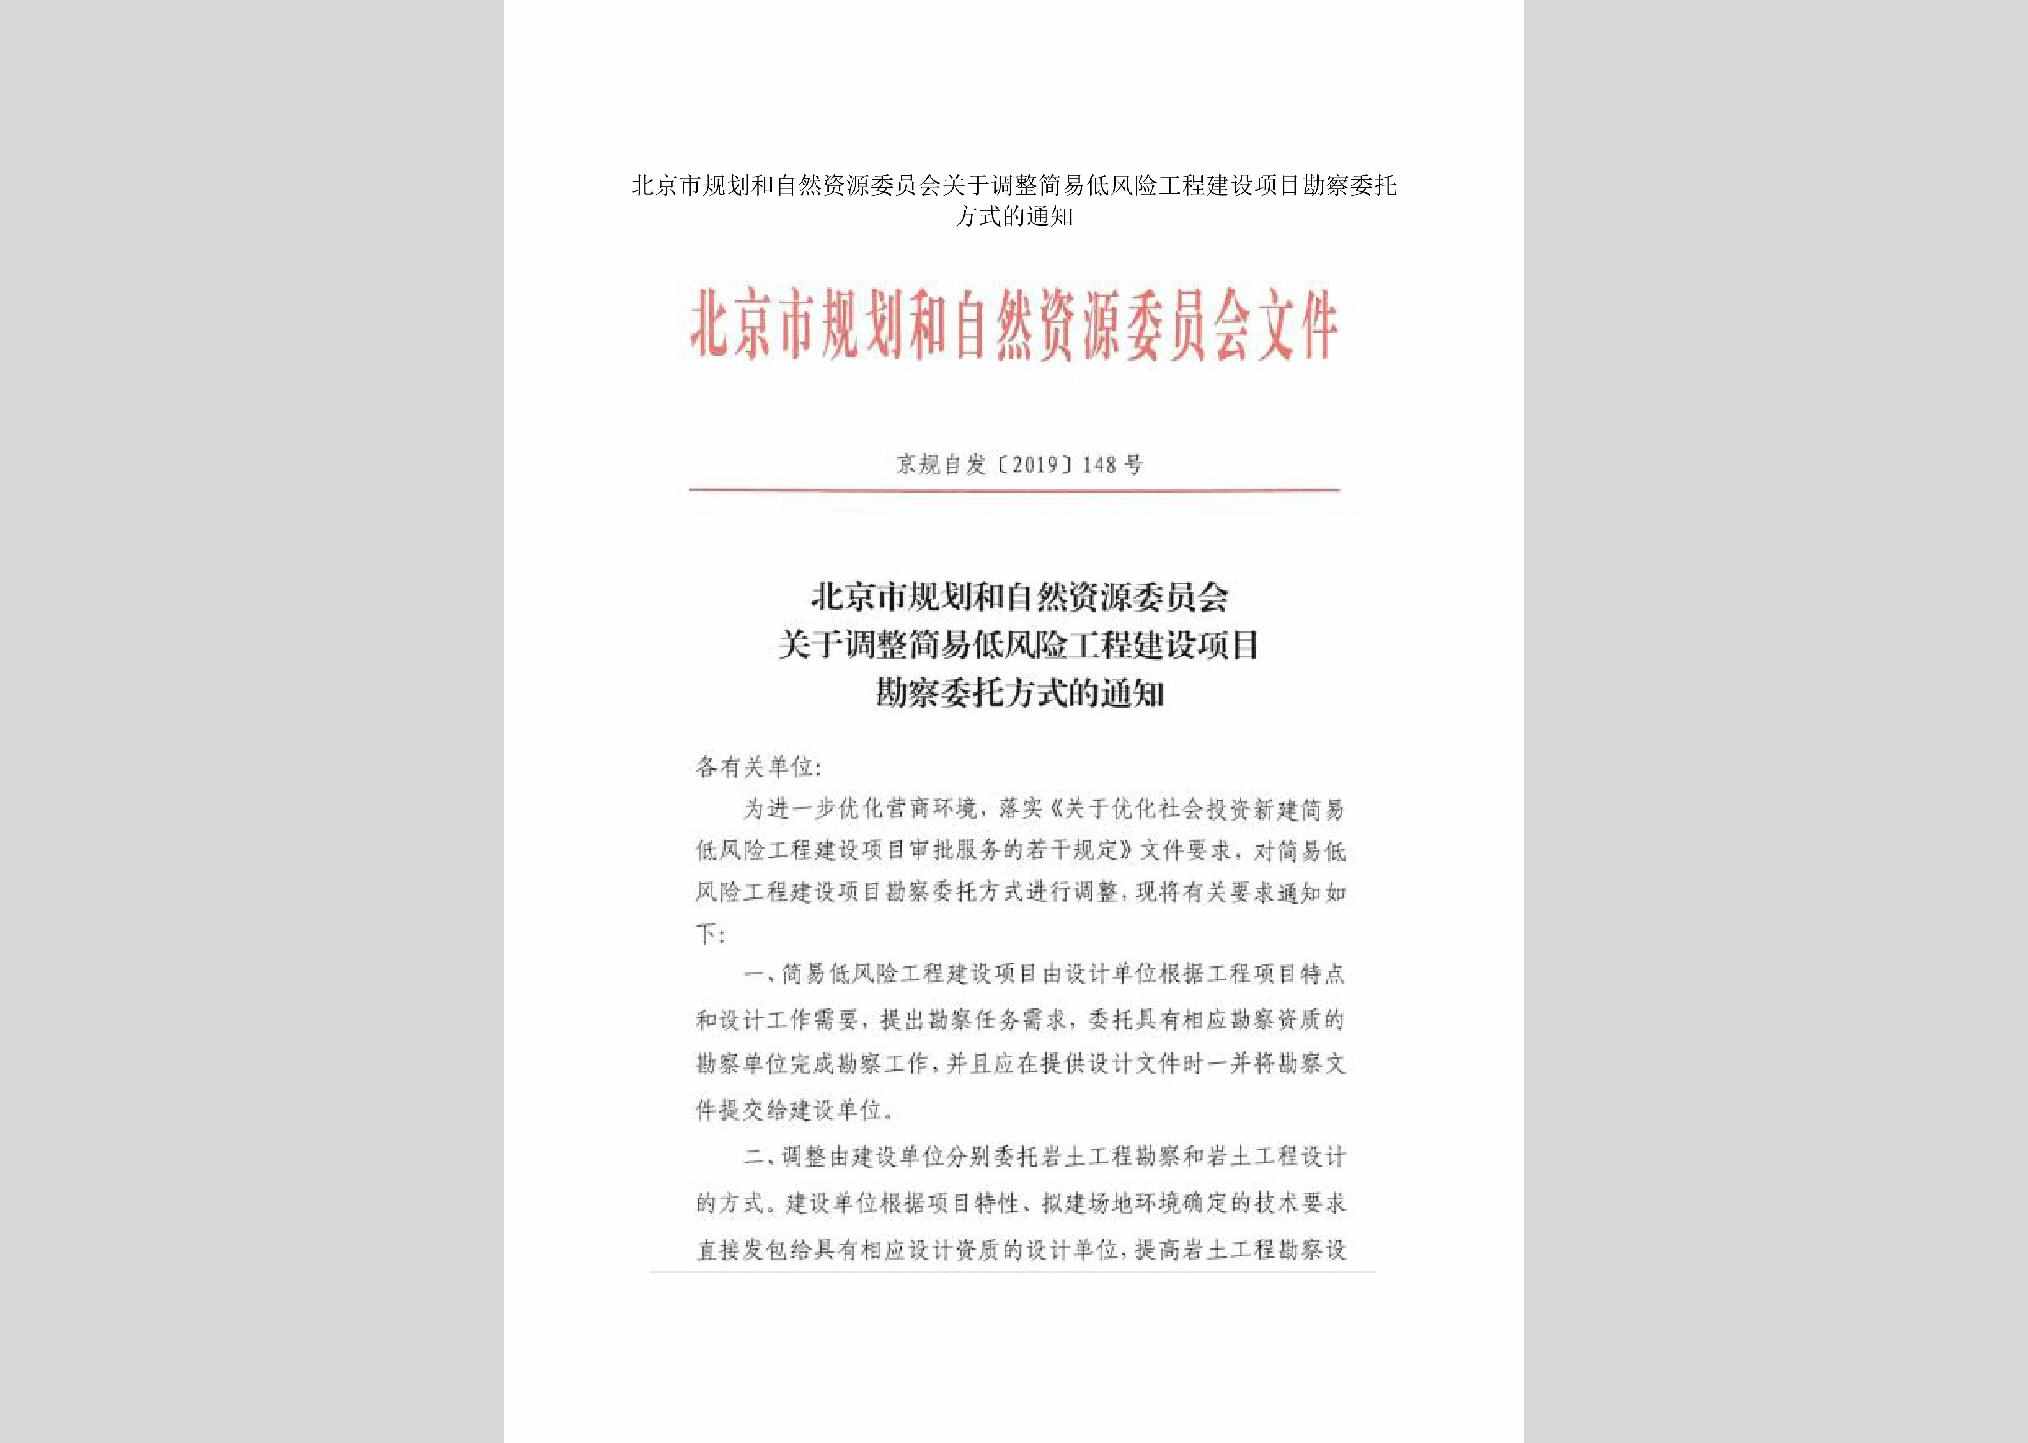 京规自发[2019]148号：北京市规划和自然资源委员会关于调整简易低风险工程建设项目勘察委托方式的通知